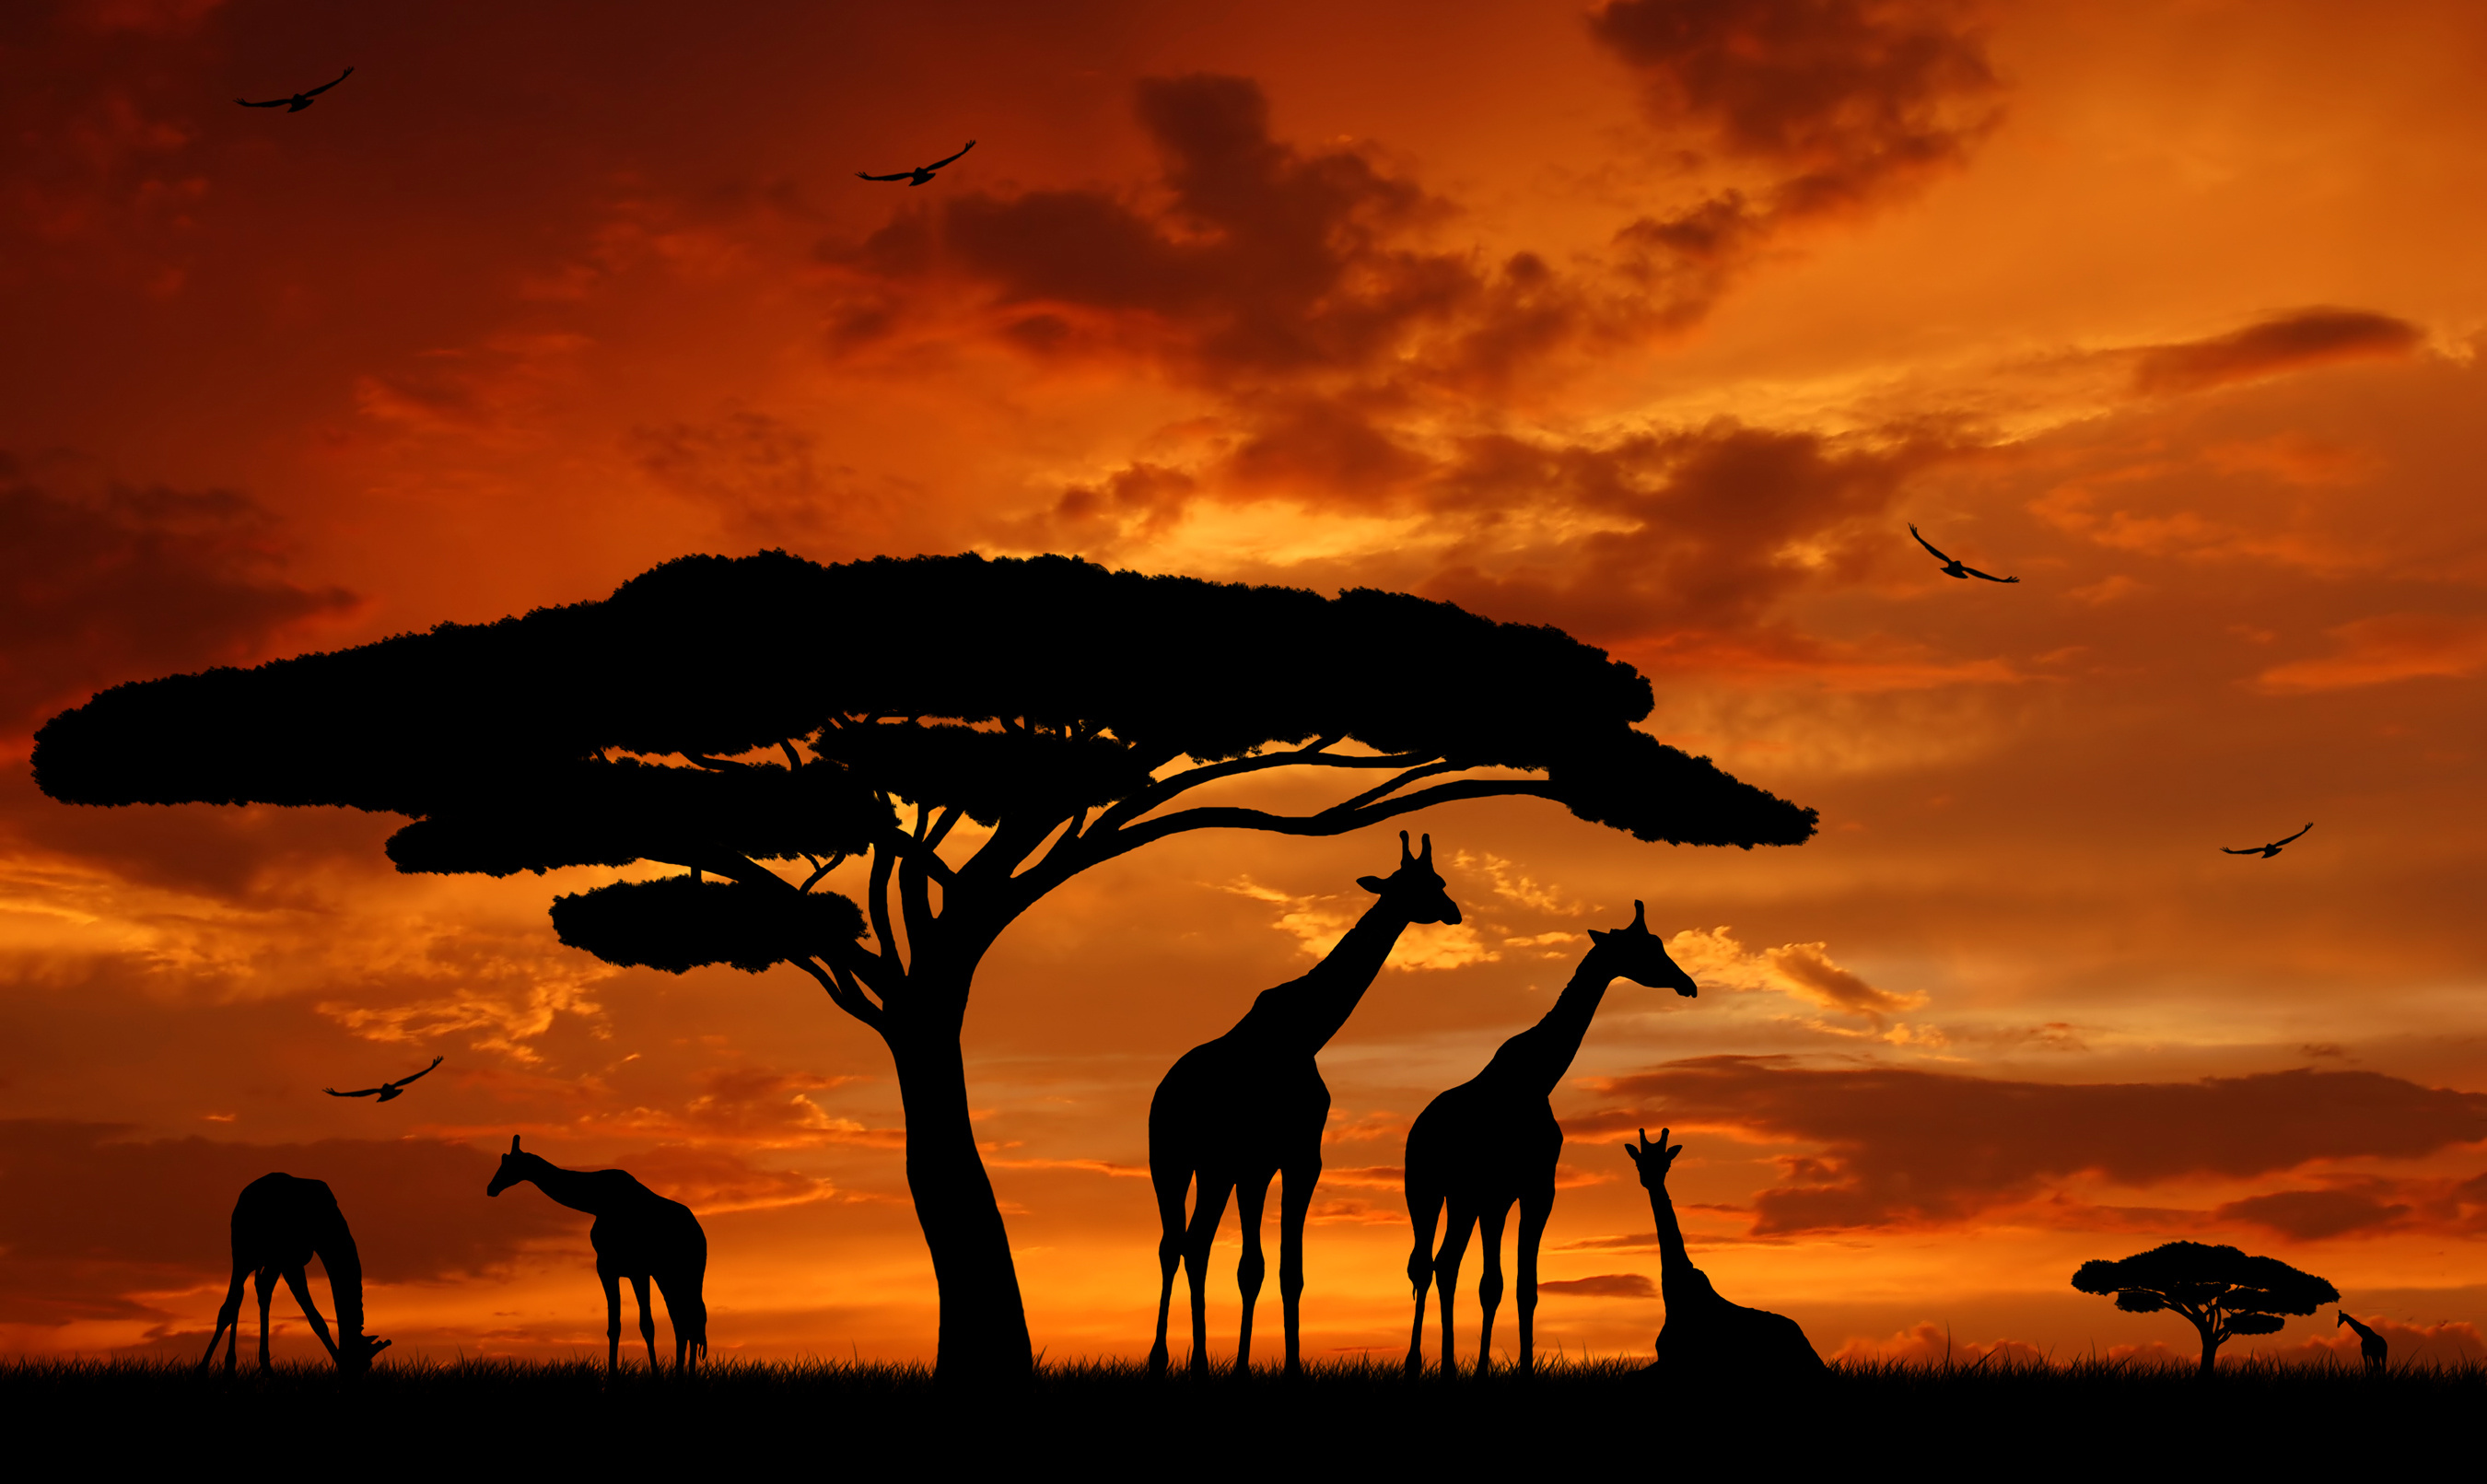 Comment organiser un voyage en Afrique ?